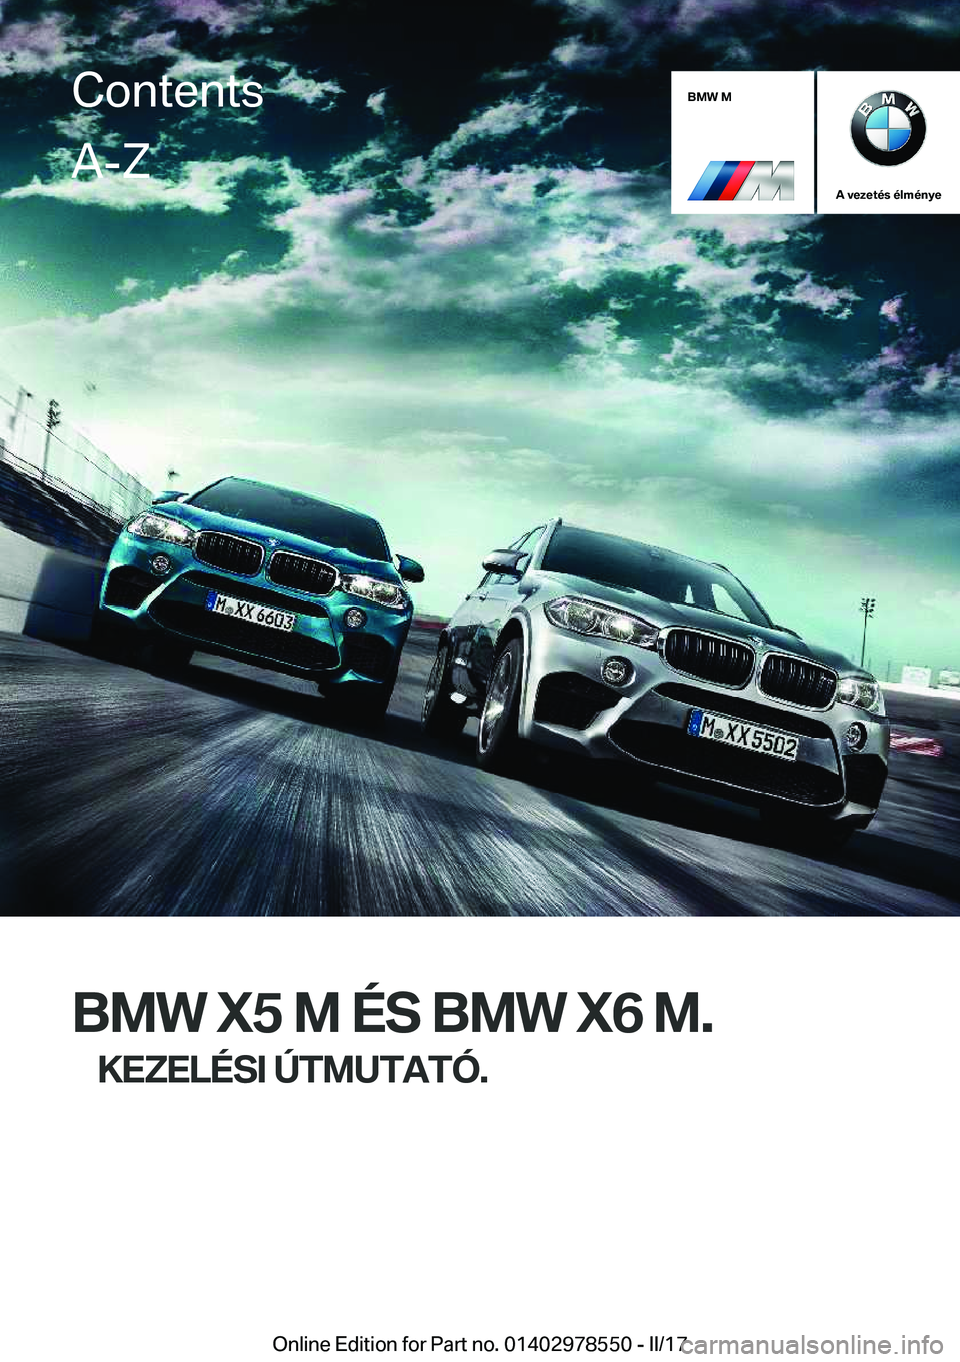 BMW X6 M 2017  Kezelési útmutató (in Hungarian) �B�M�W��M
�A��v�e�z�e�t�é�s��é�l�m�é�n�y�e
�B�M�W��X�5��M��